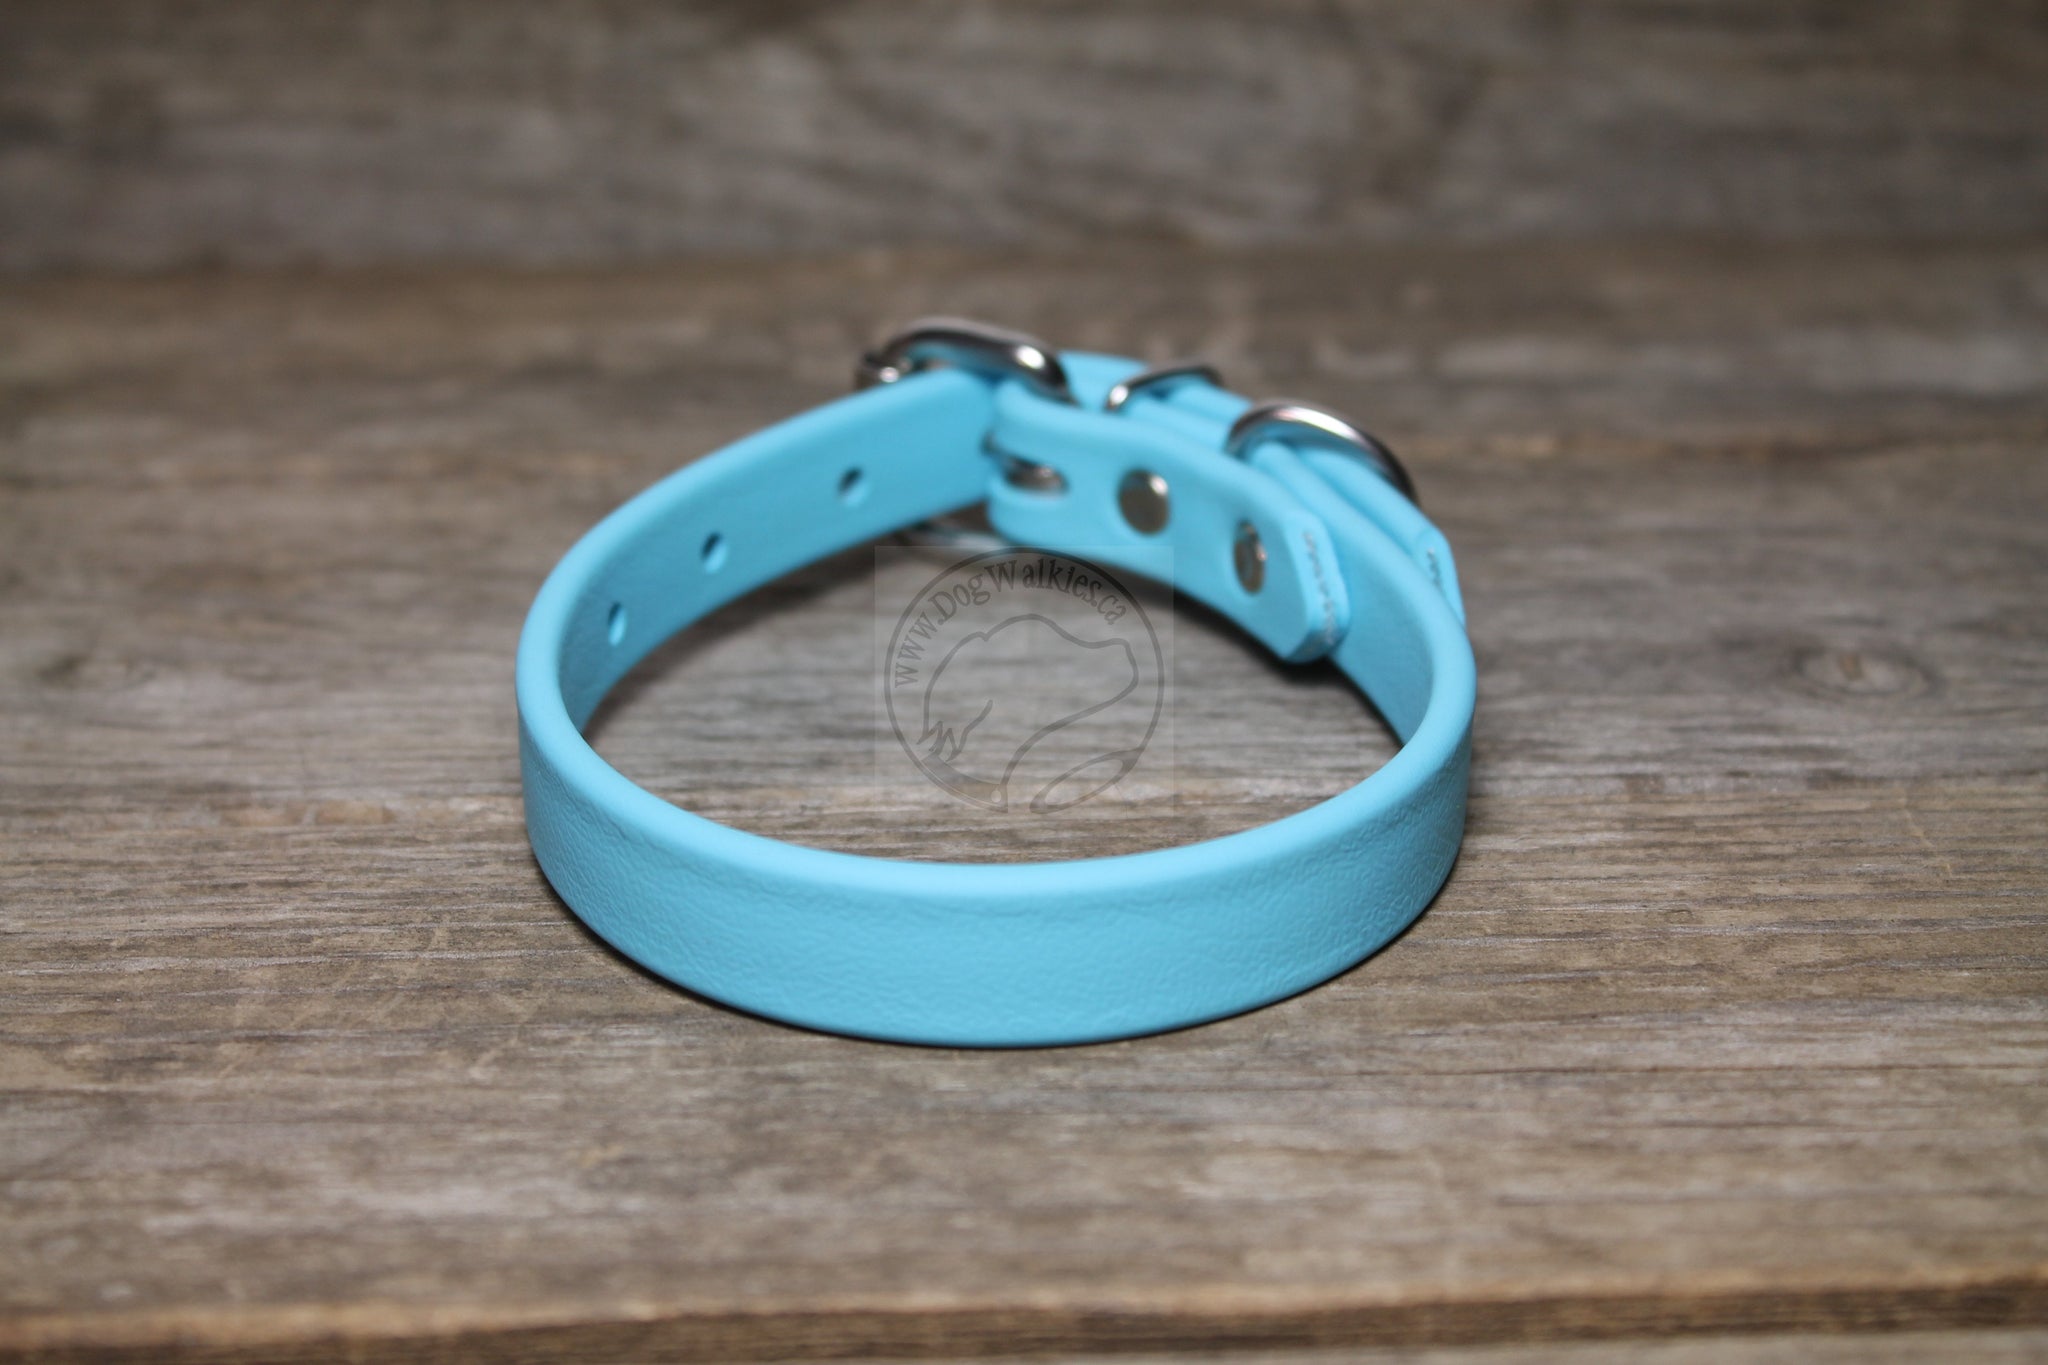 Frozen Blue Biothane Dog Collar - 5/8"(16mm) wide